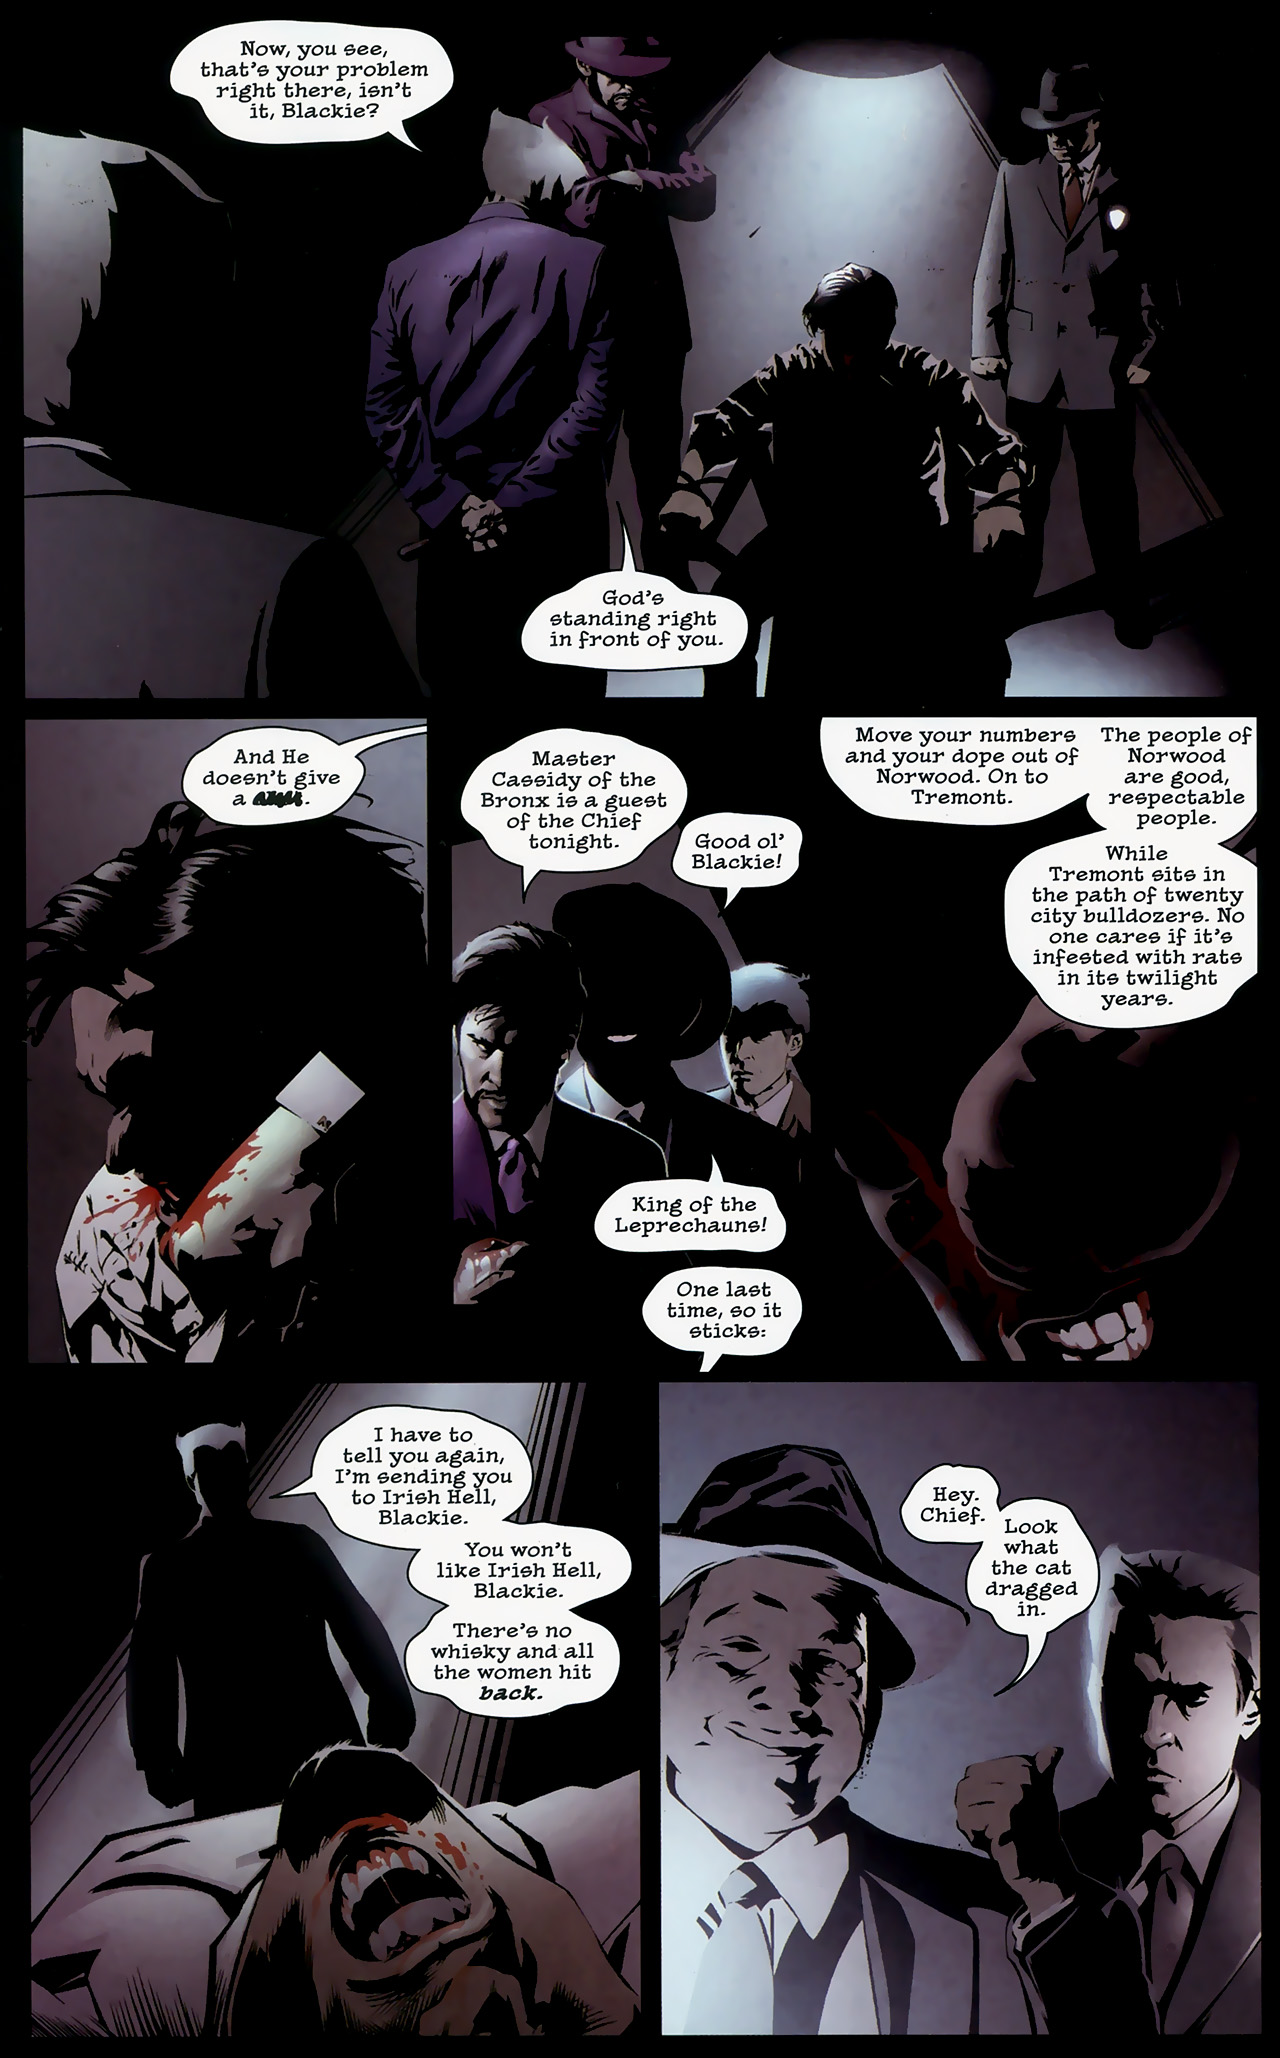 X-Men Noir #1 (of 4) 